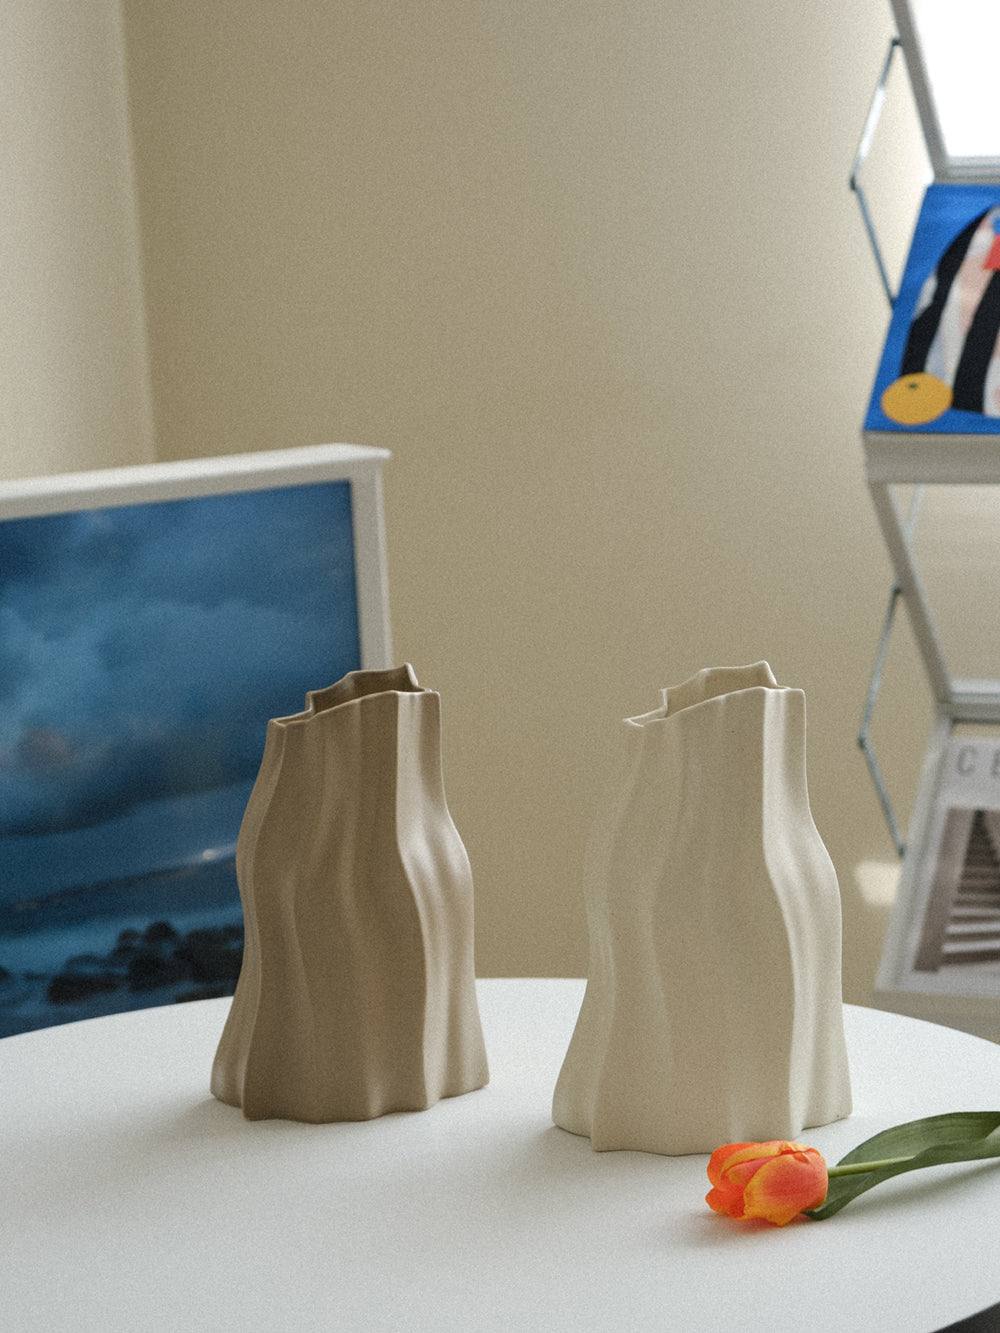 Irregular Crinkle Vase - WENSHUO